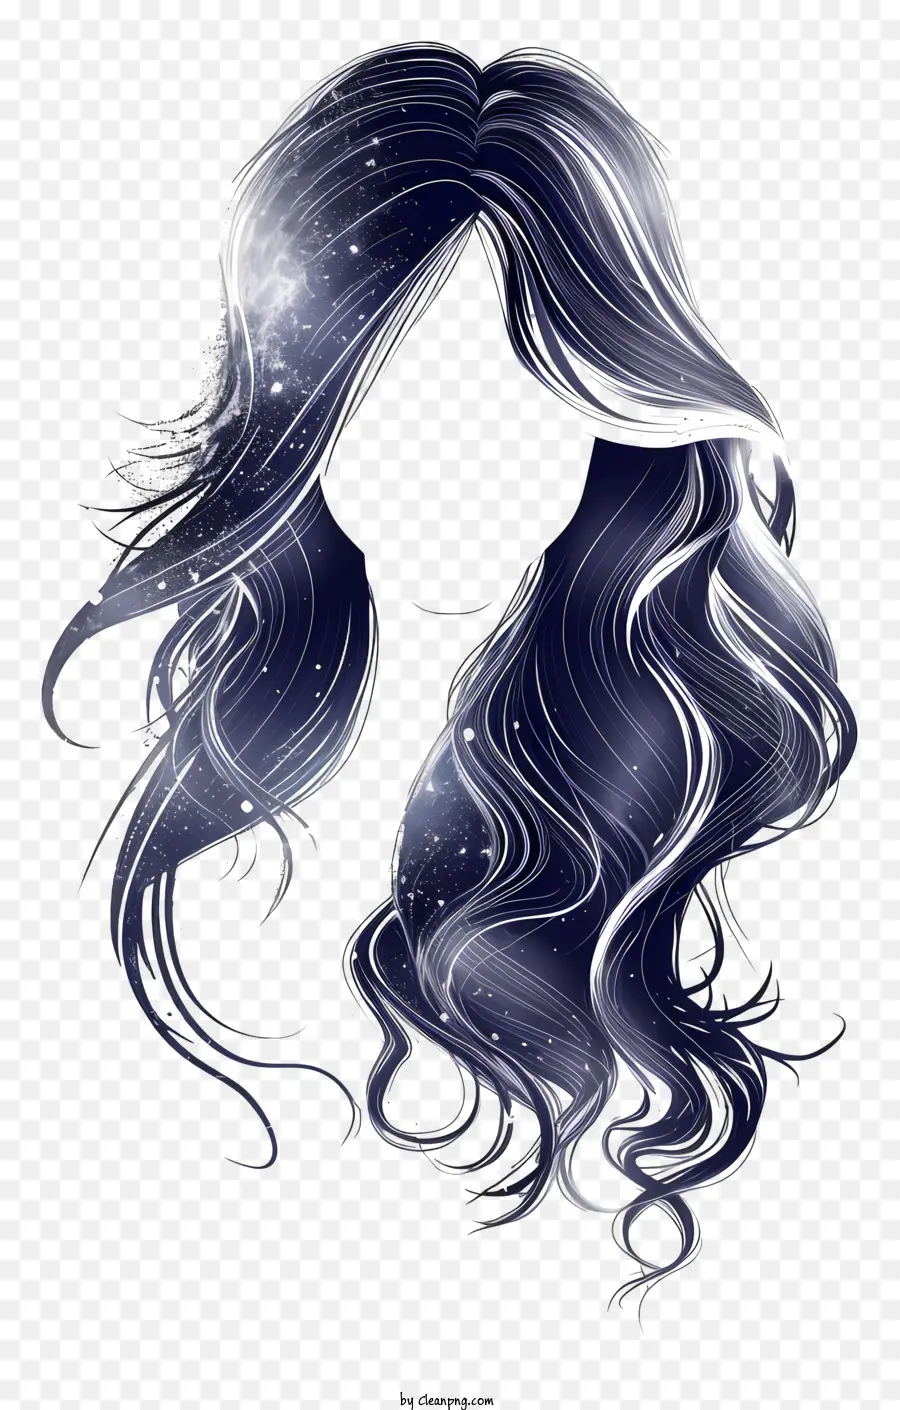 Perücke langes fließendes Haar tiefblau Farbe lose Wellen feuchtes Haar - Elegante, mysteriöse Frau mit fließendem blauem Haar